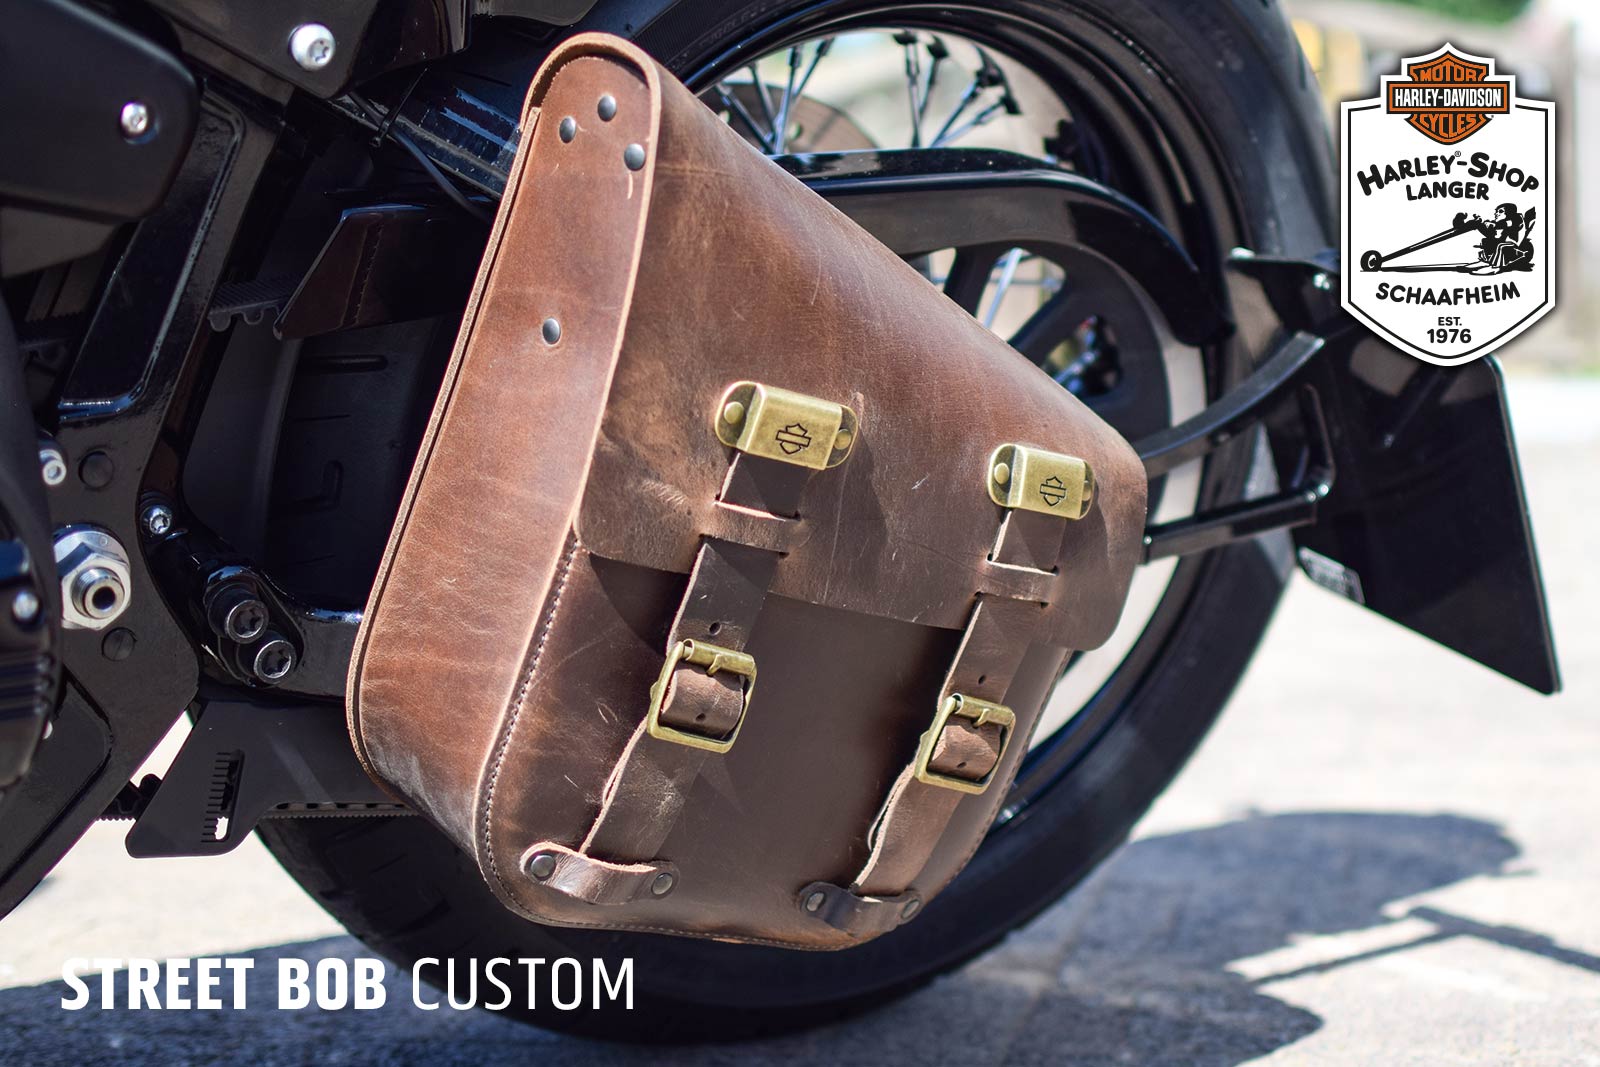 Harley-Shop Langer Softail Street-Bob Custom Umbau